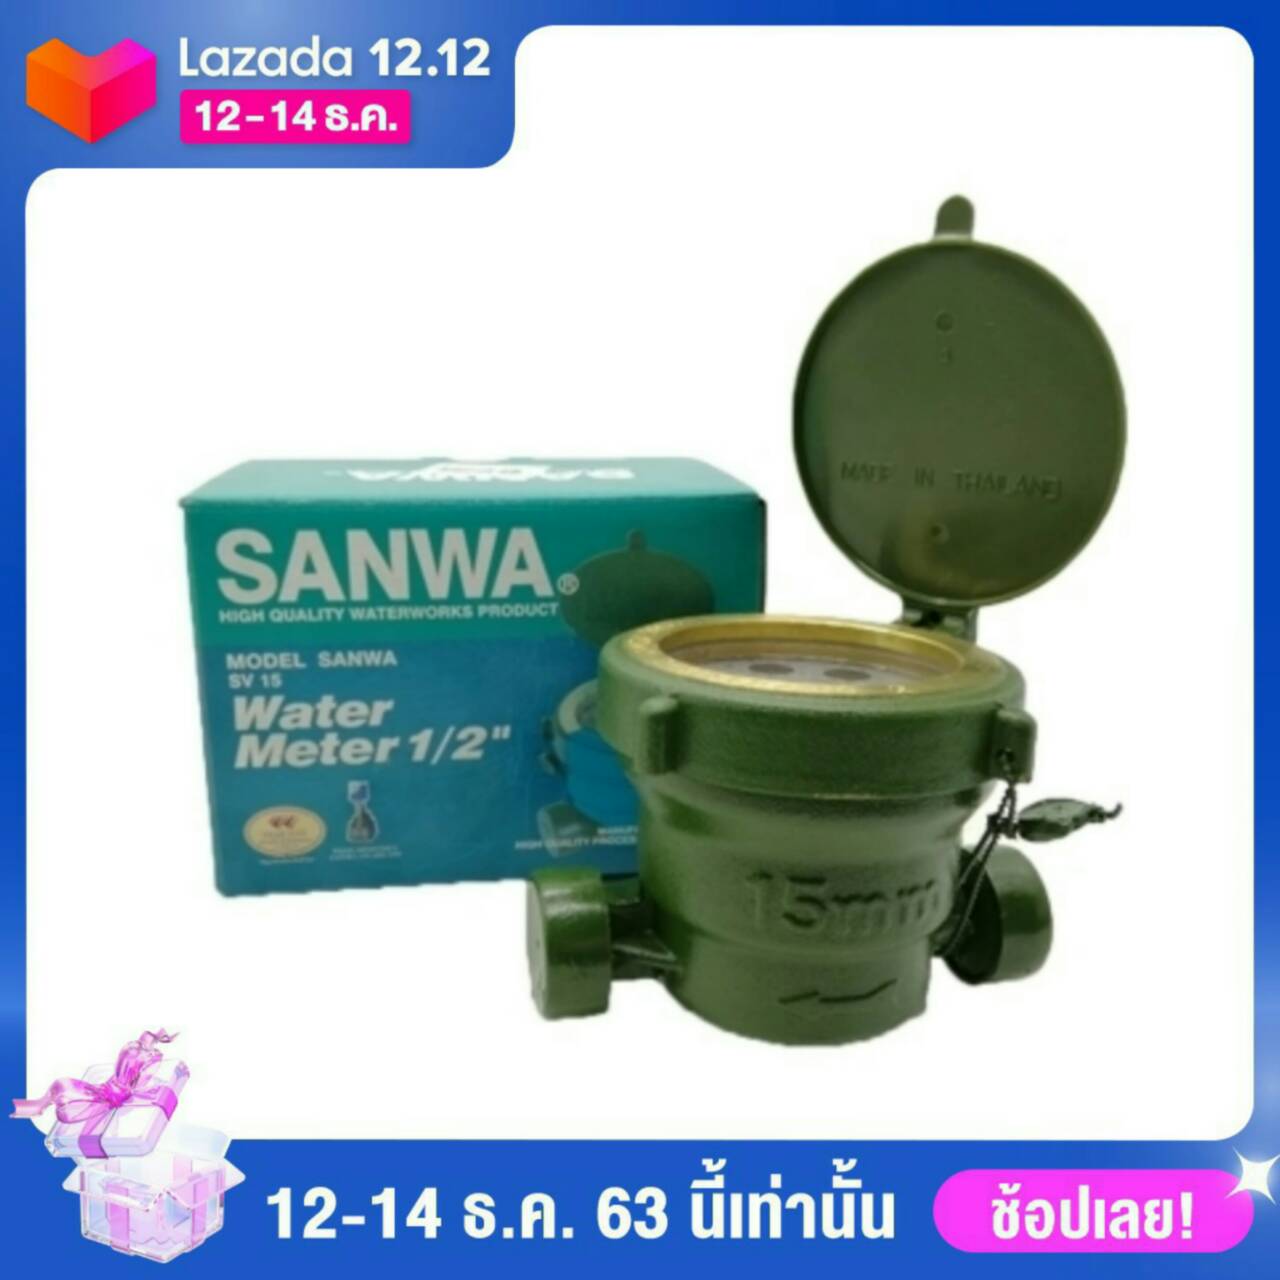 มิเตอร์น้ำ มาตรวัดน้ำ Water meter Sanwa SV15 1/2”